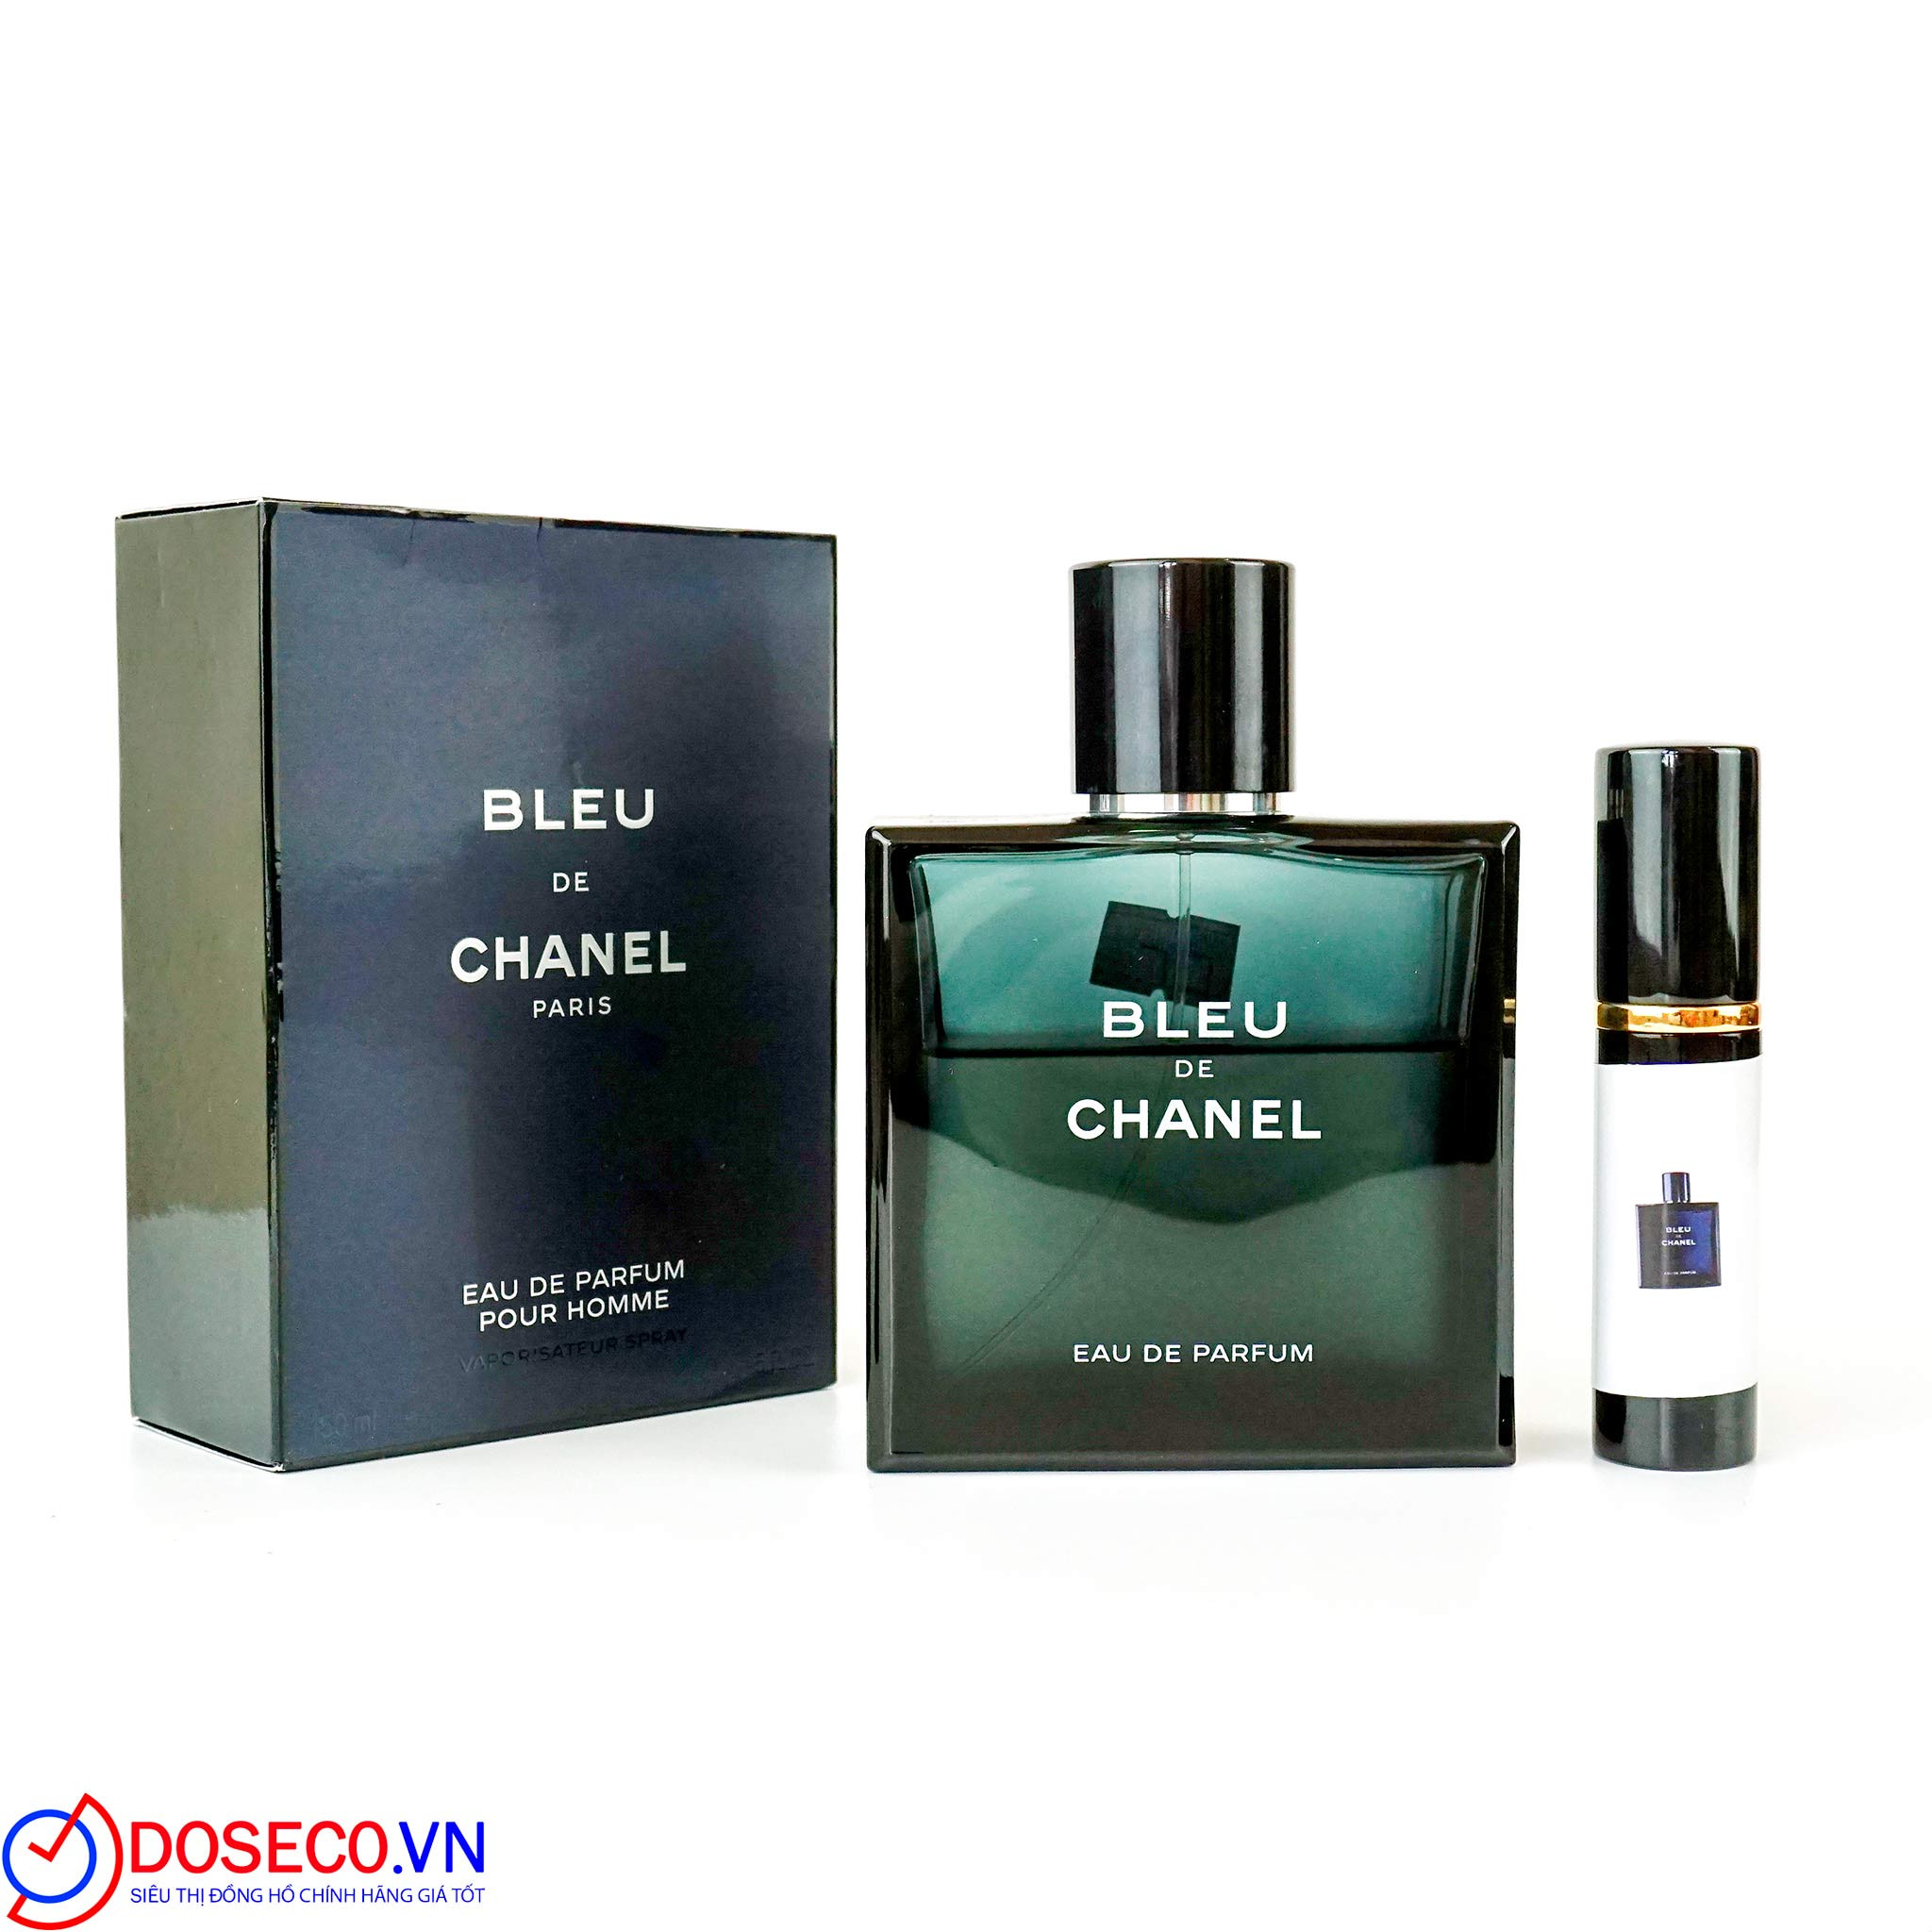 Chanel Bleu De Chanel Eau de Parfum